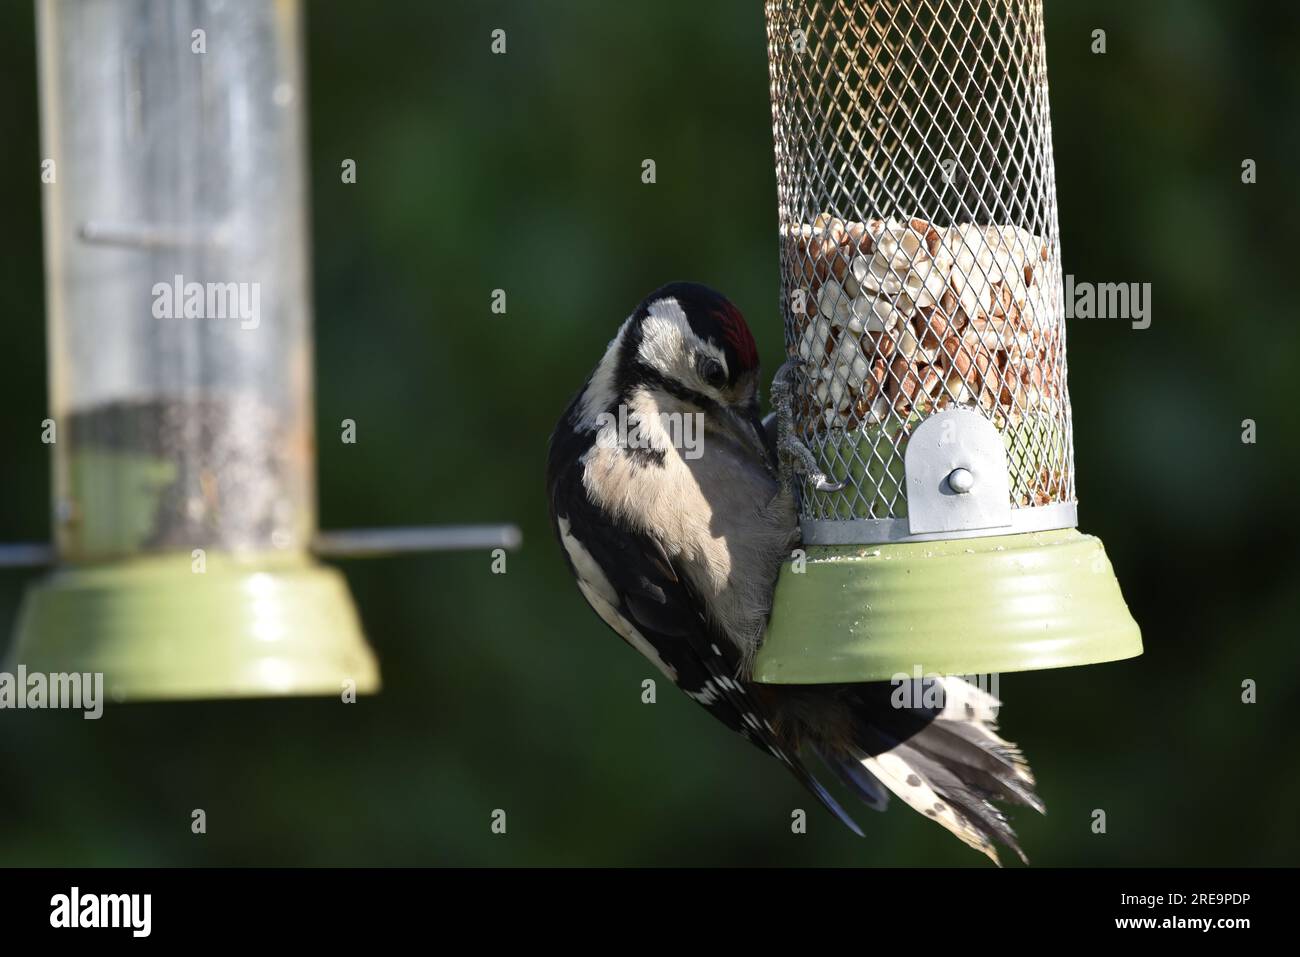 Pugnalato giovanile Great Spotted Woodpecker (Dendrocopus Major) che pugnalava a destra dell'immagine, nel tardo pomeriggio del sole, su uno sfondo verde Foto Stock